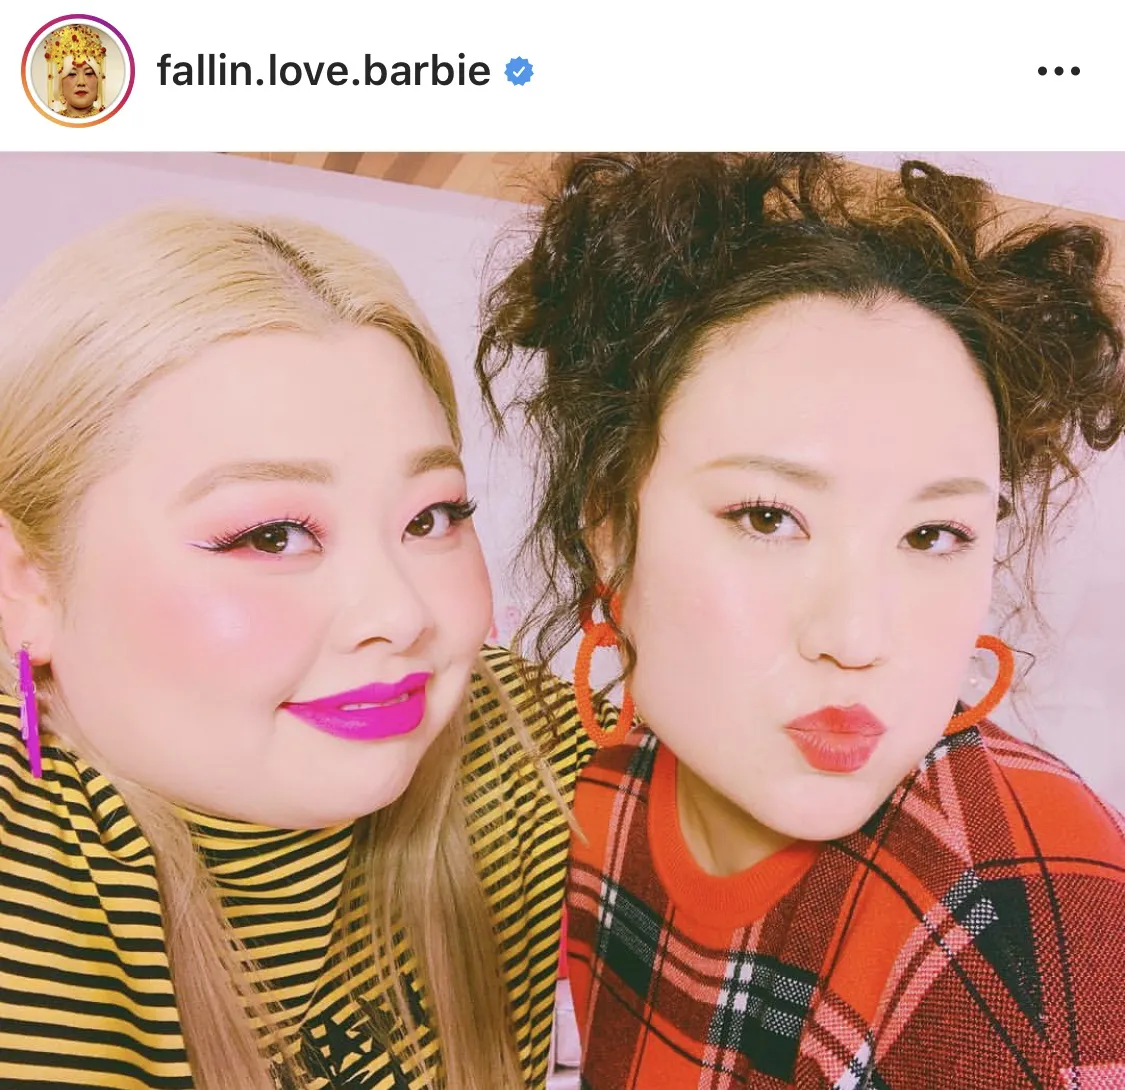 ※画像はバービー(fallin.love.barbie)公式Instagramのスクリーンショットです